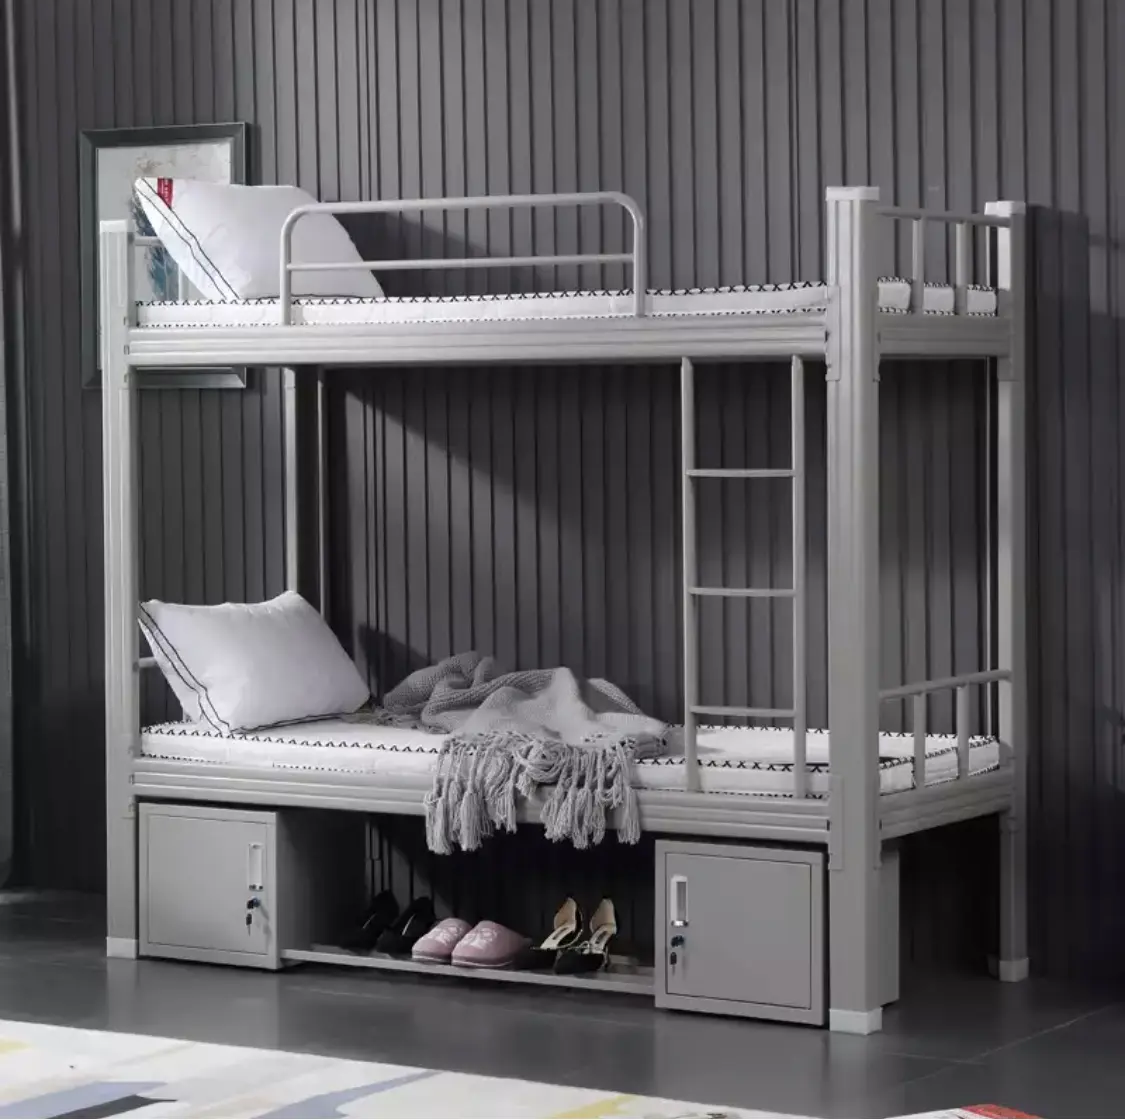 Bunk Bed Double Deck Bed Steel Bunk Beds Made Of Steel Cheap Metal Bed Cama Litera De Metal Escalera